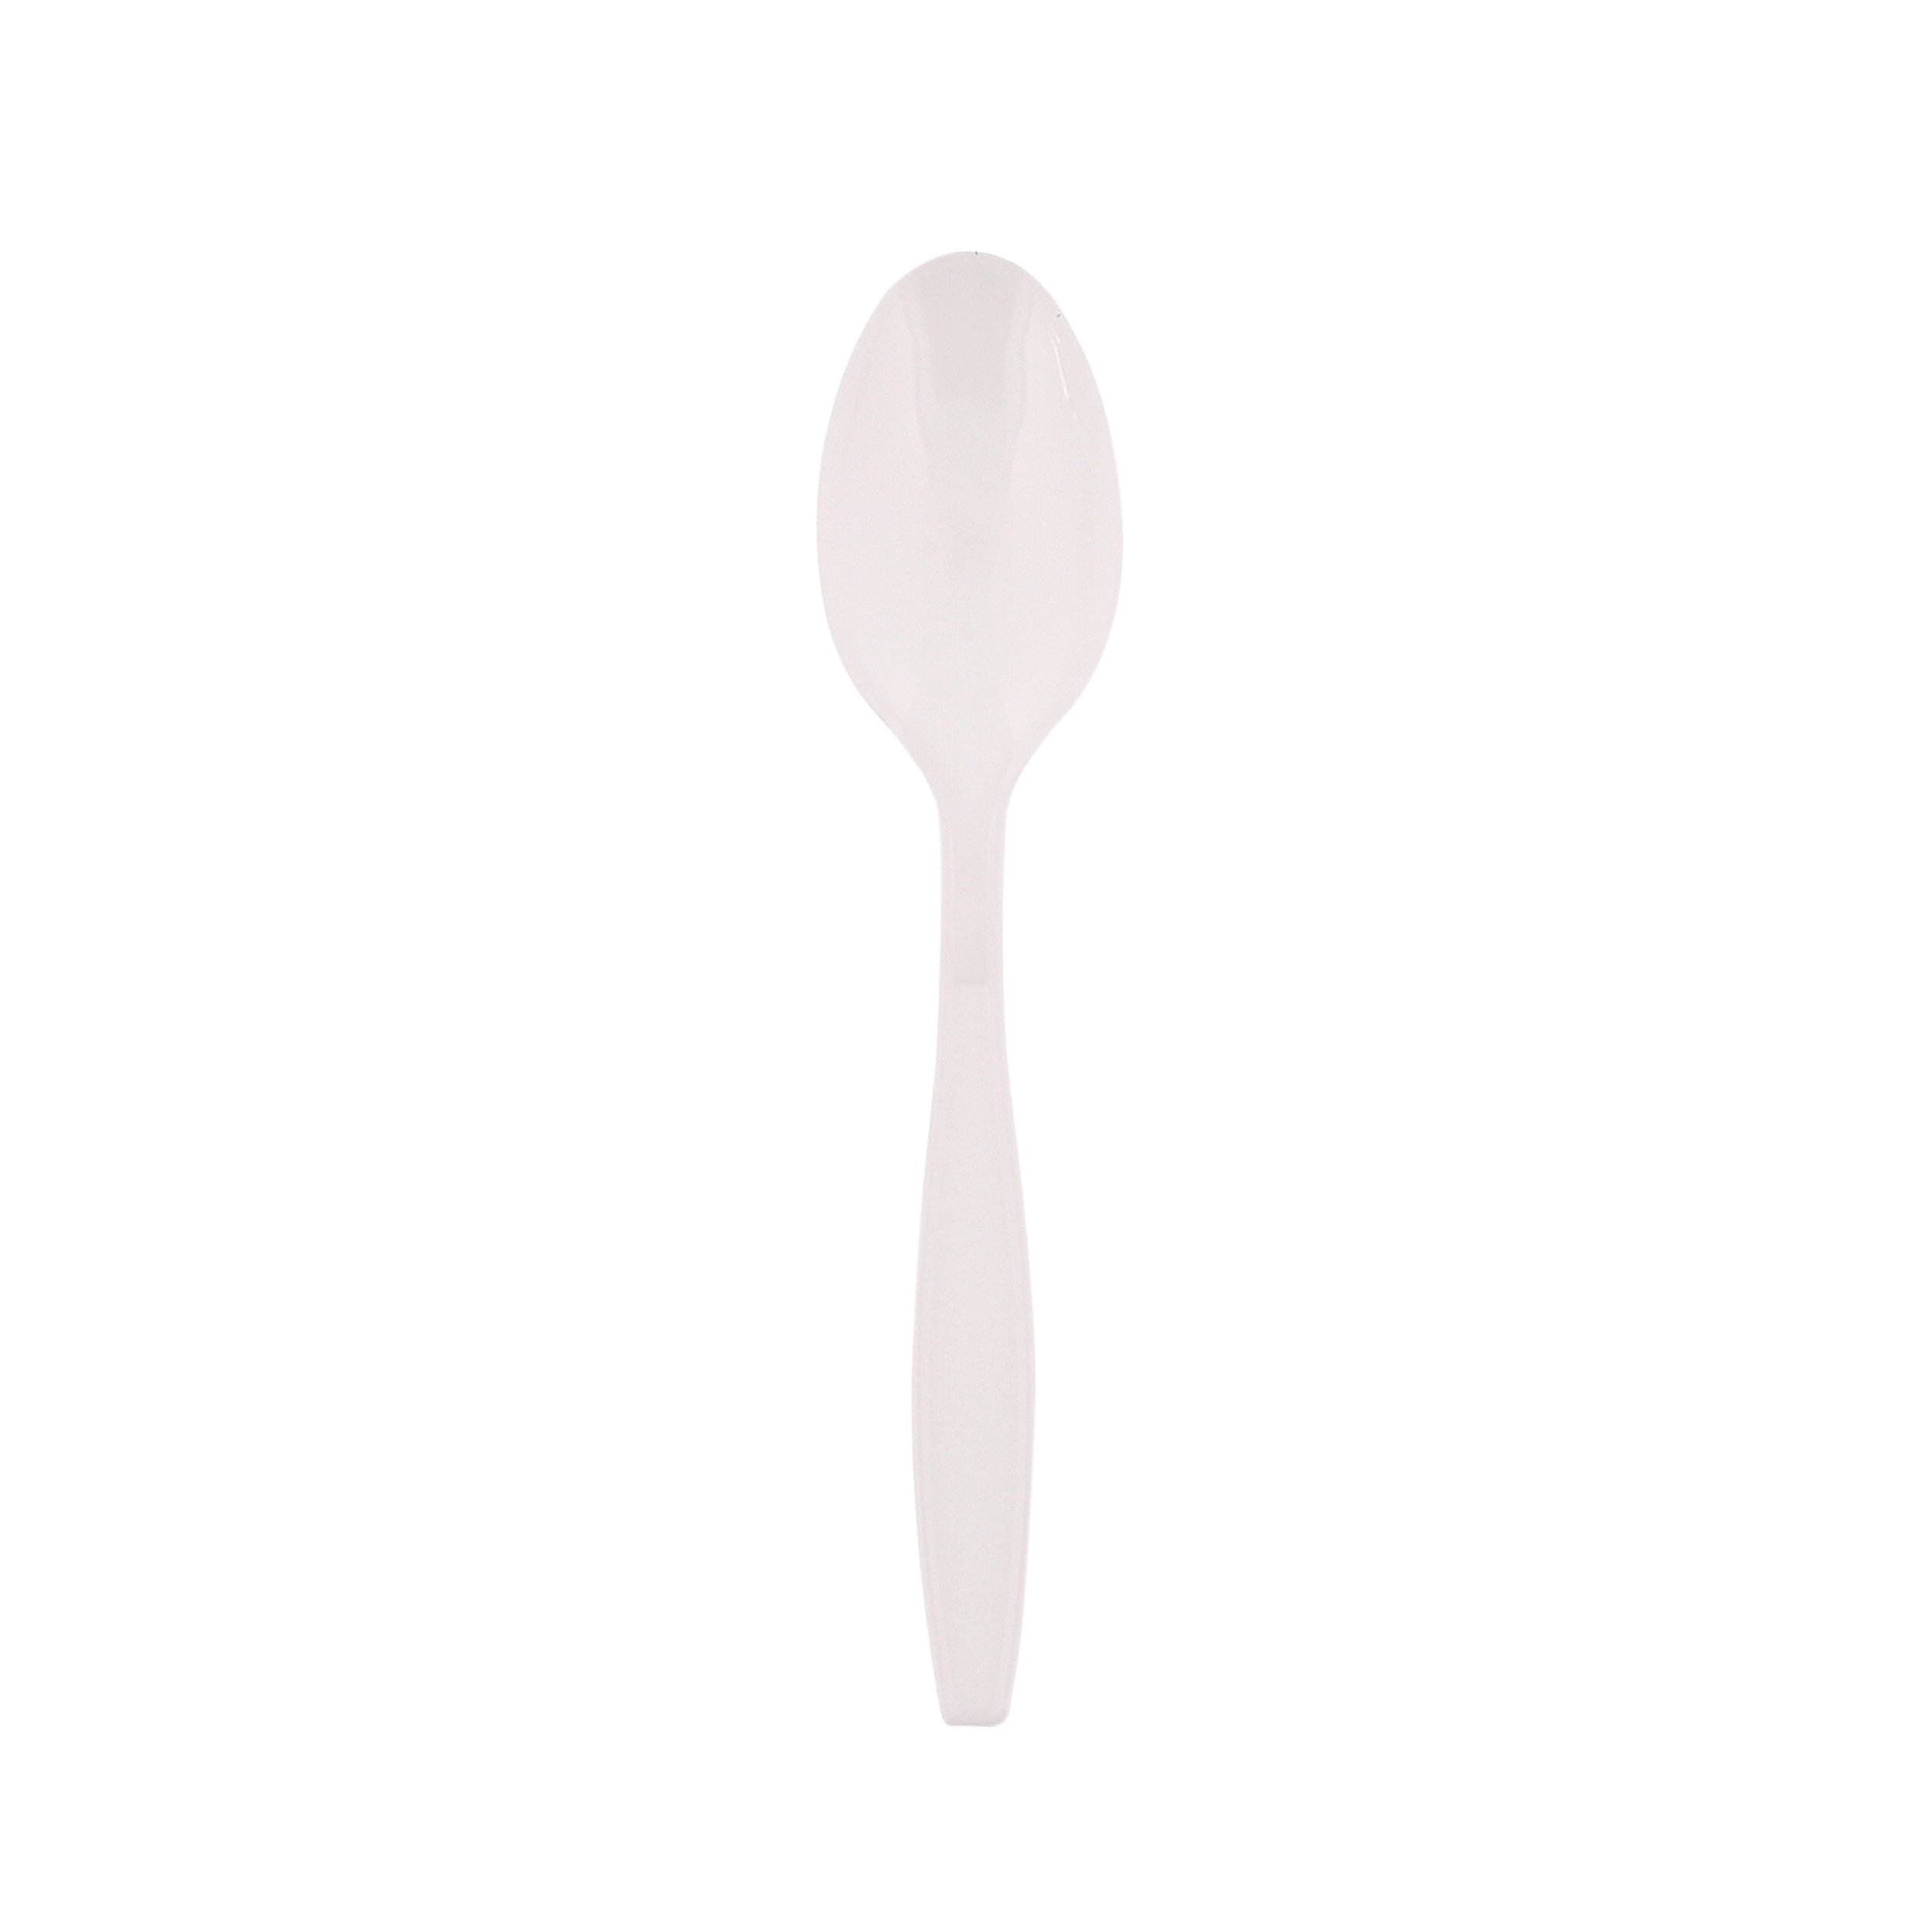 Spoon Heavy White PP Bulk (1000)